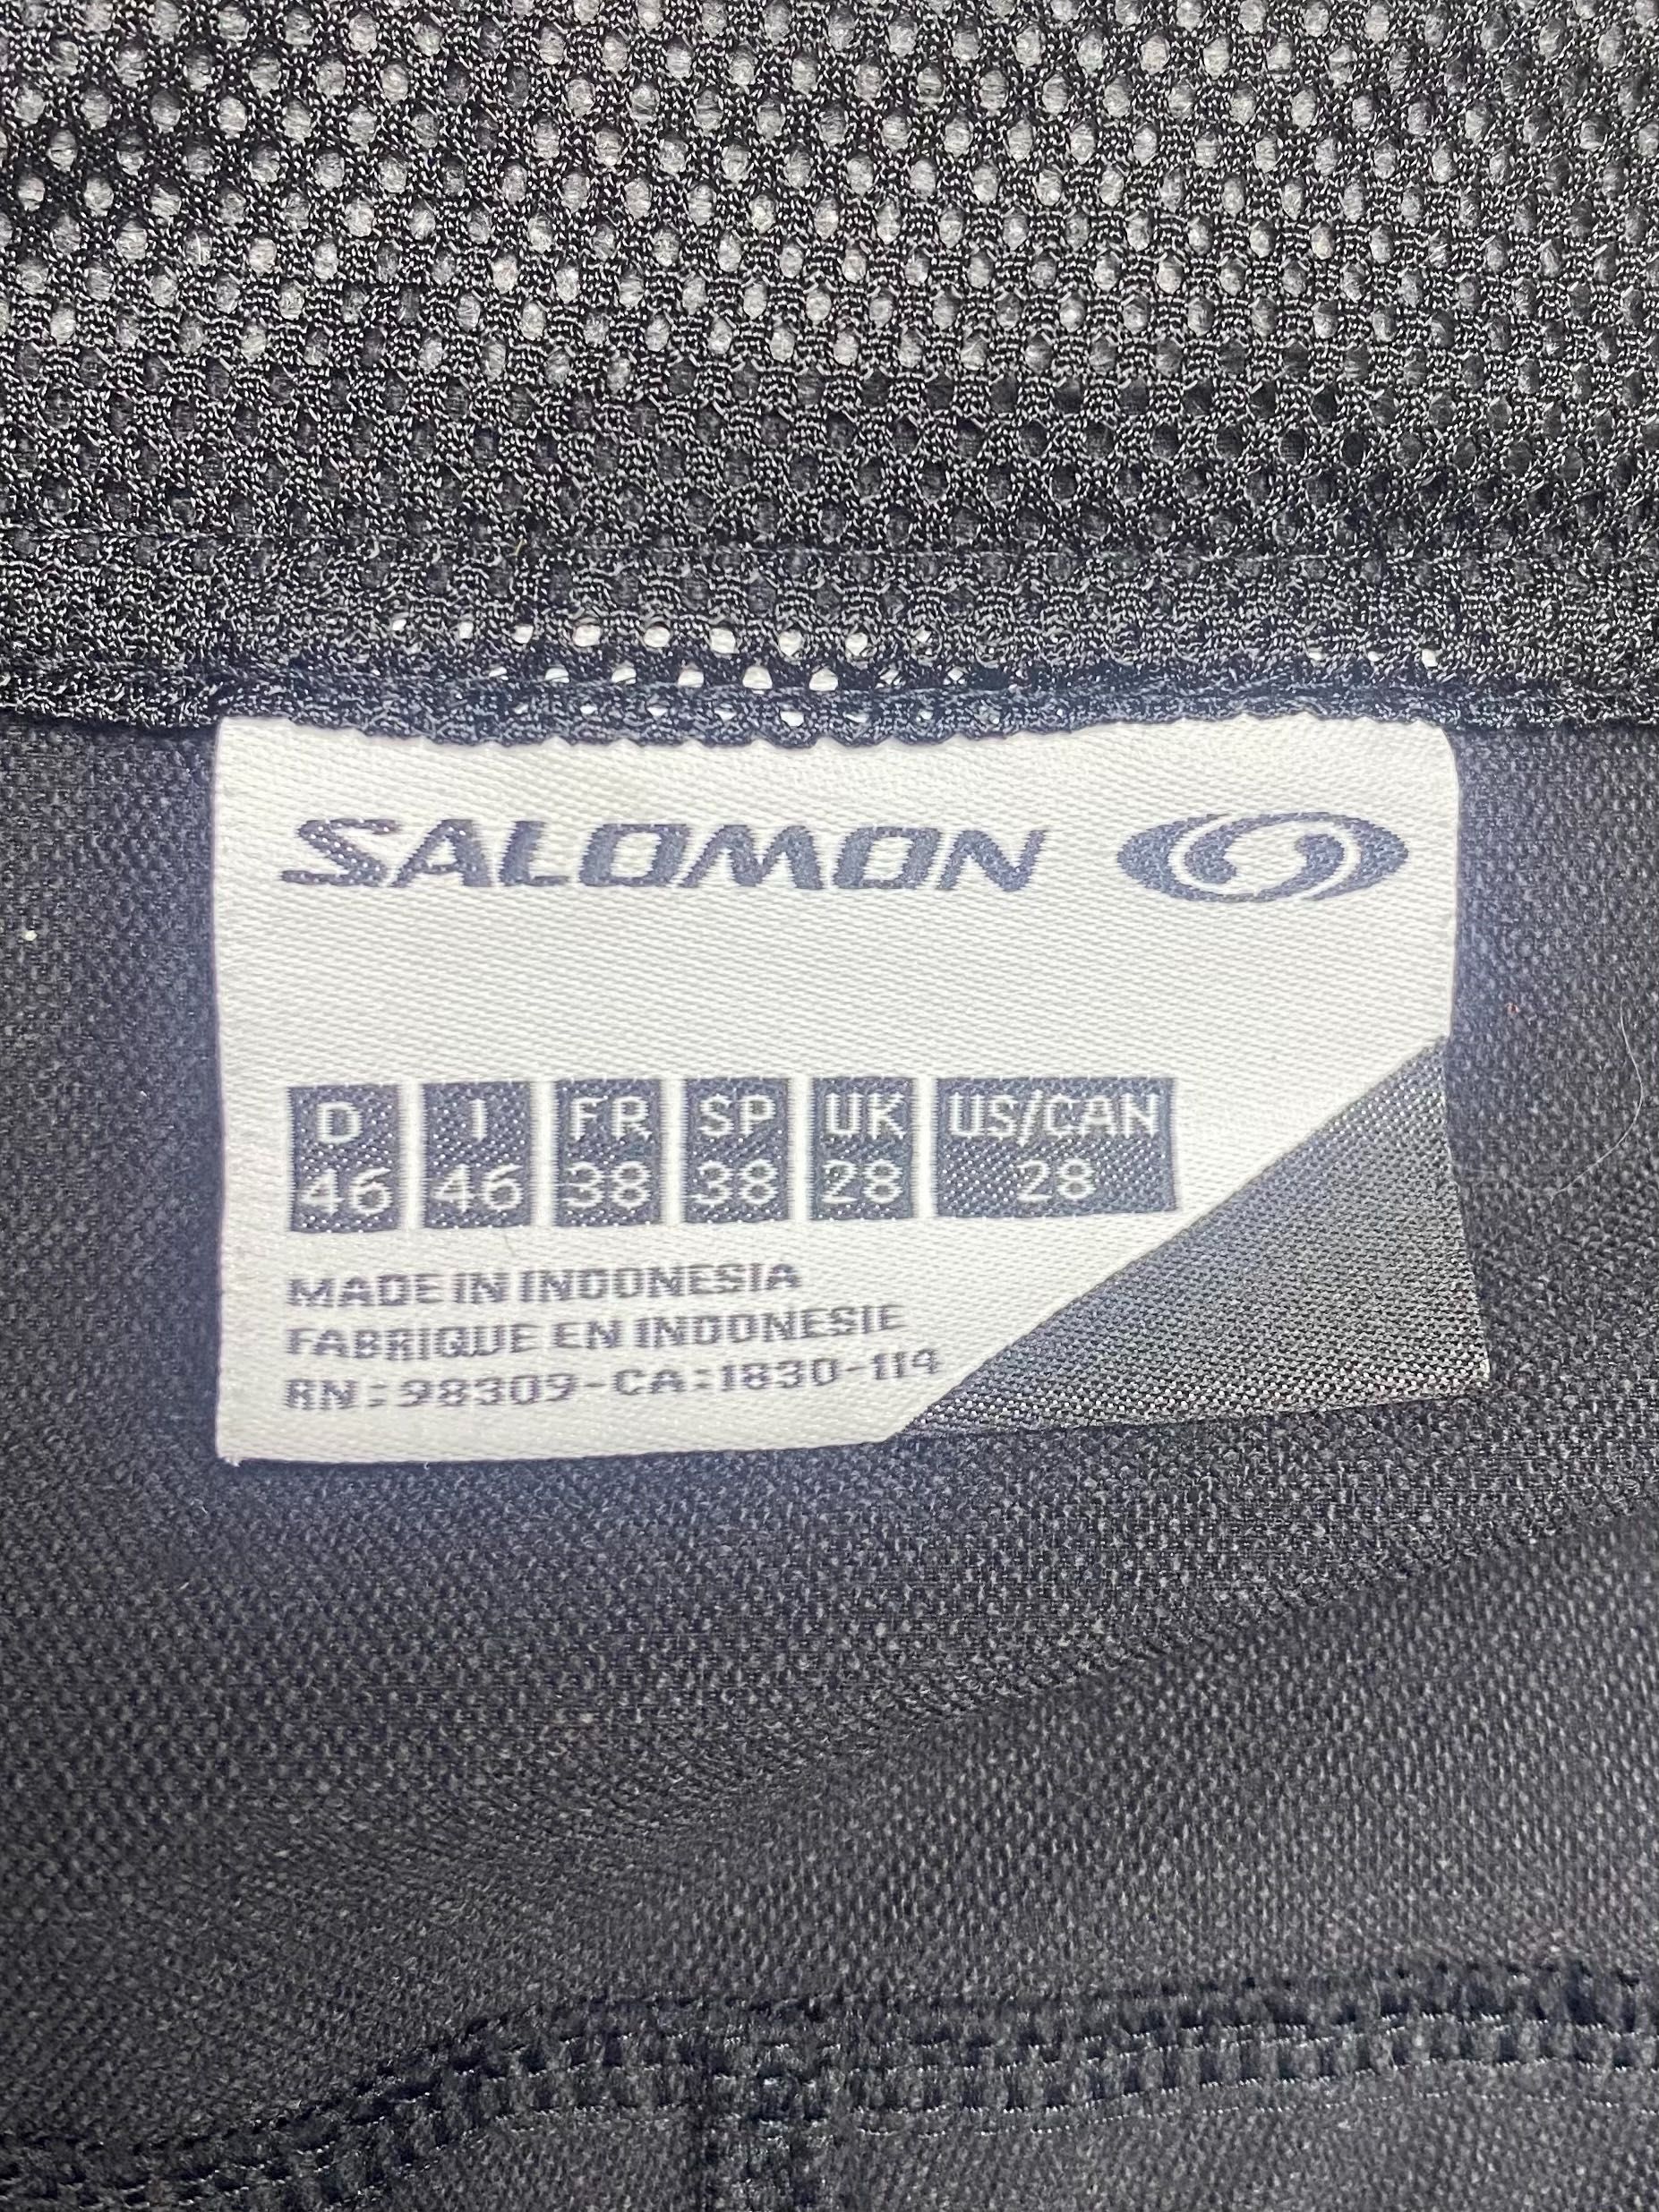 Salomon actilite шорты M размер шорты плащовка чёрные оригинал женские